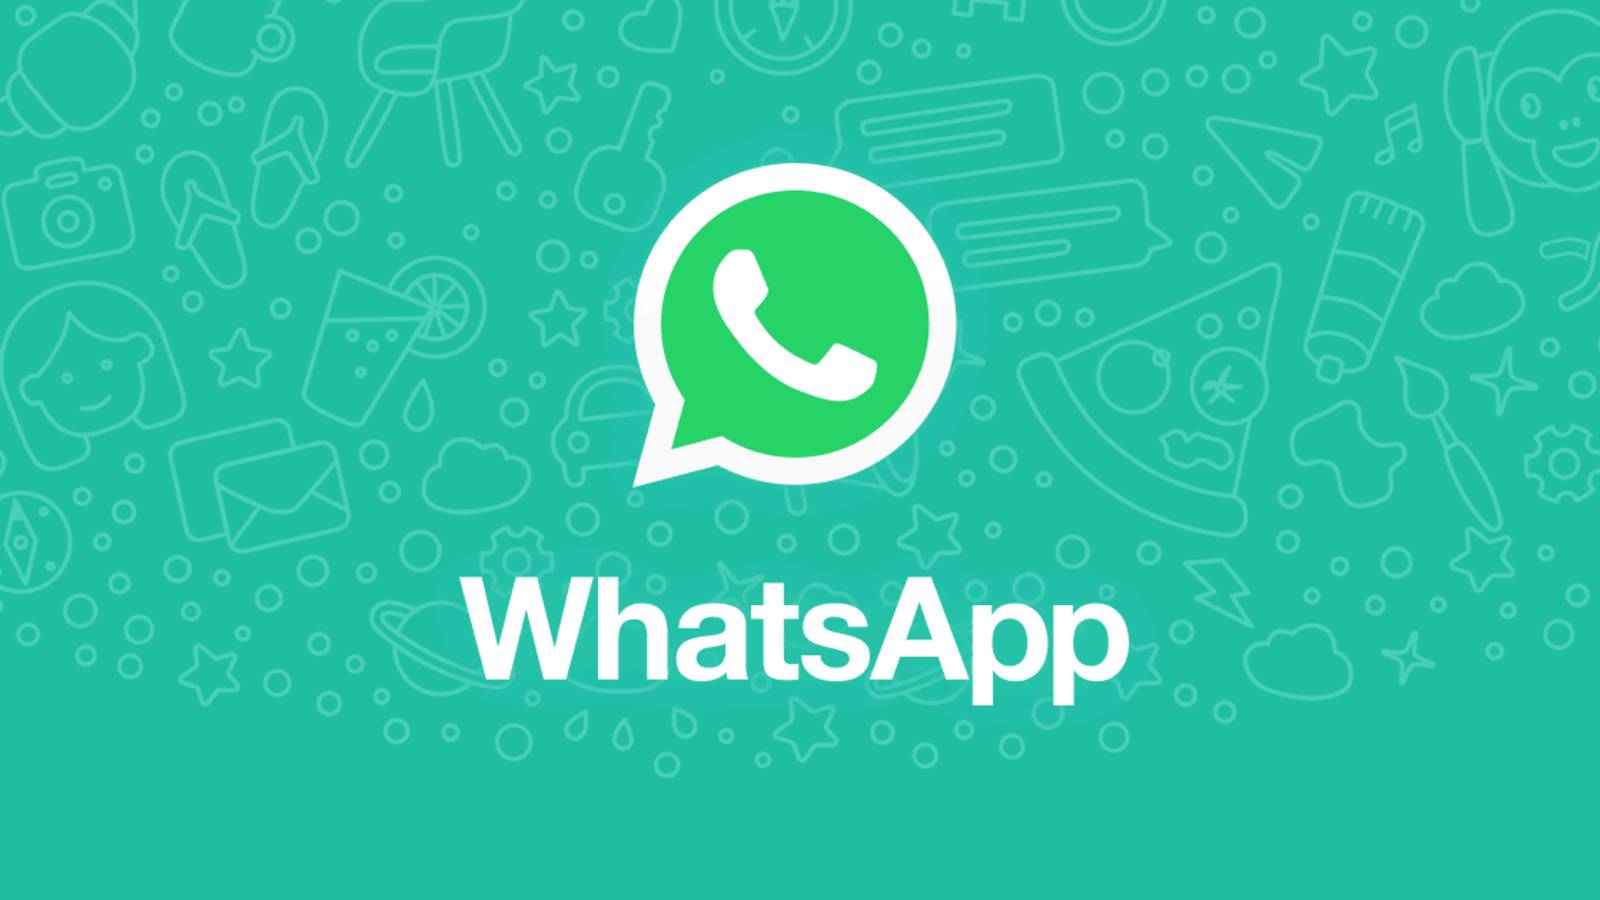 WhatsApp visual